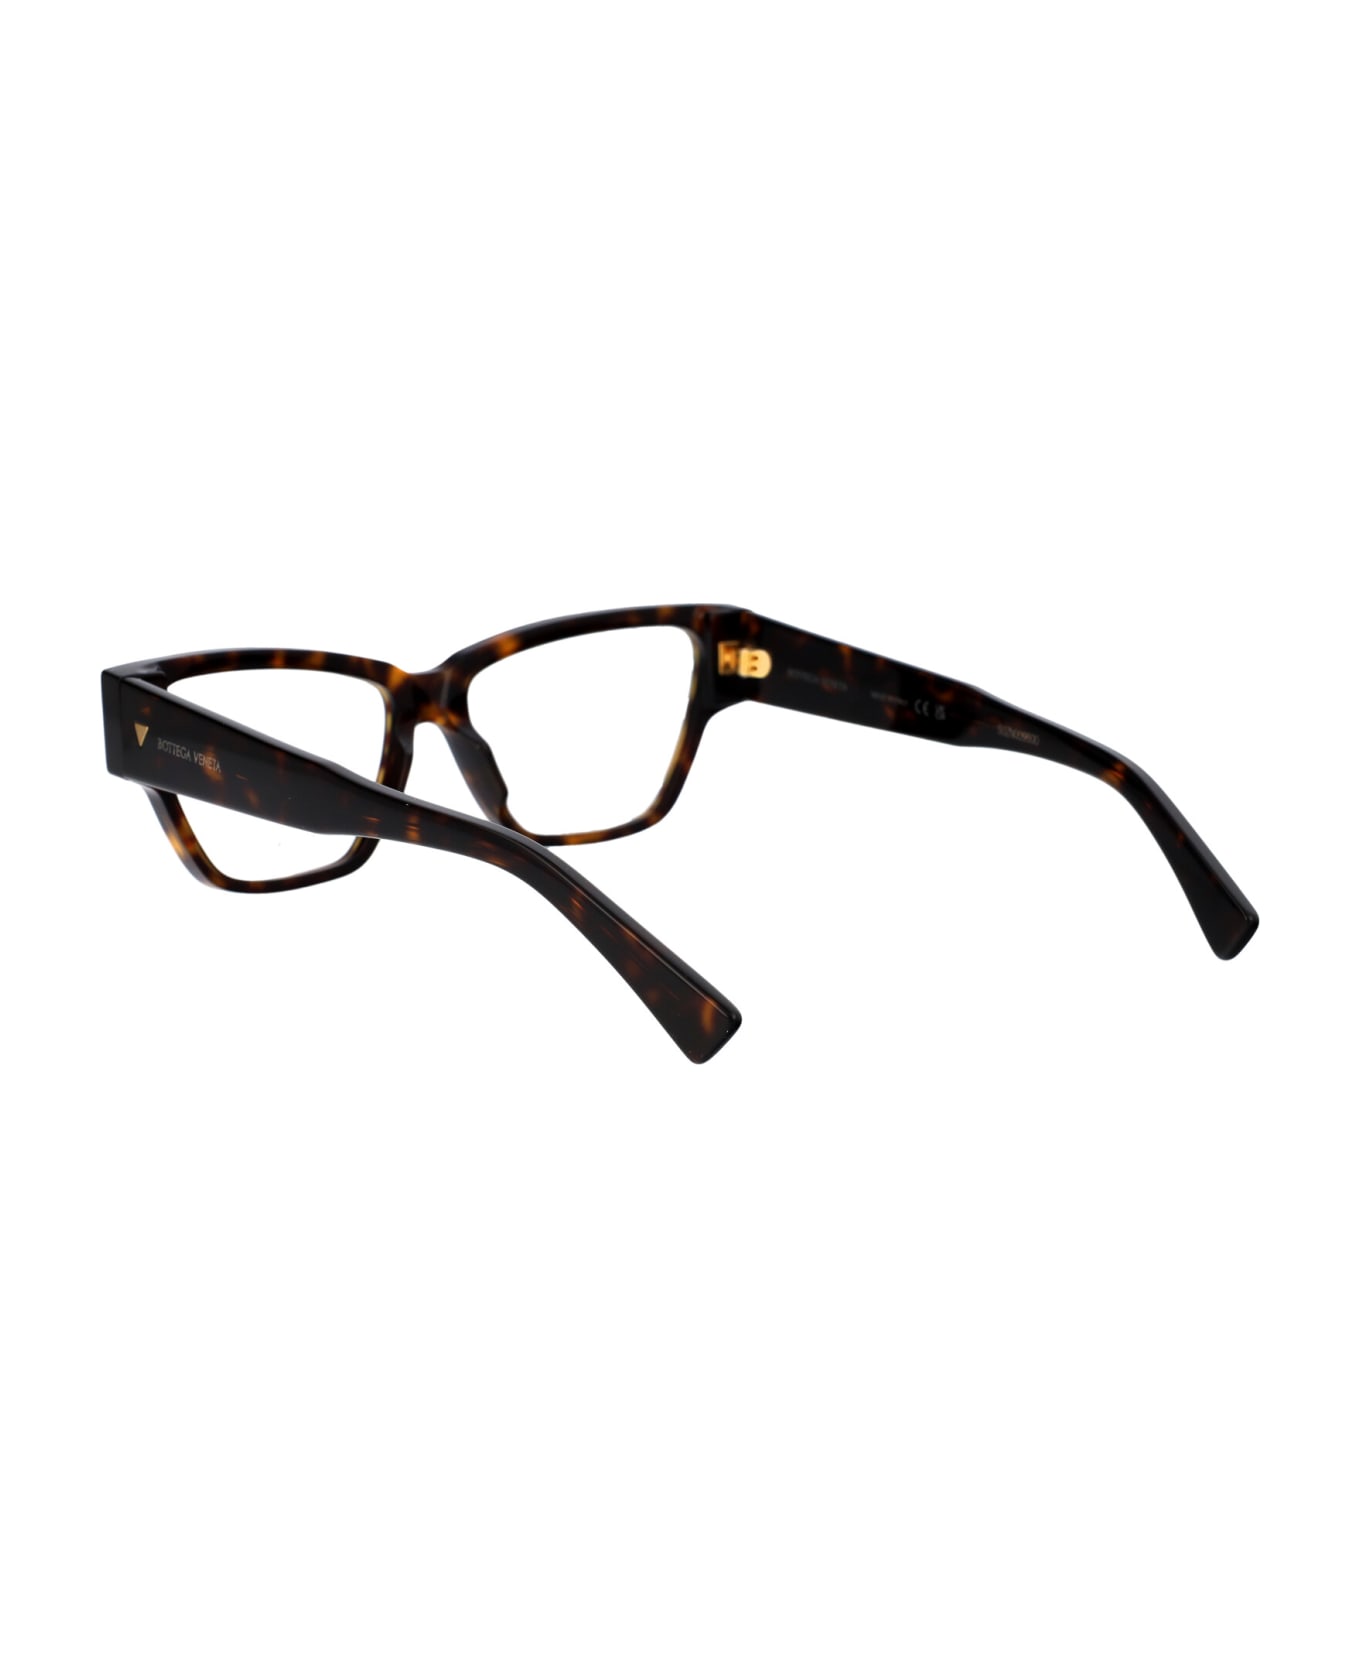 Bottega Veneta Eyewear Bv1288o Glasses - 002 HAVANA HAVANA TRANSPARENT